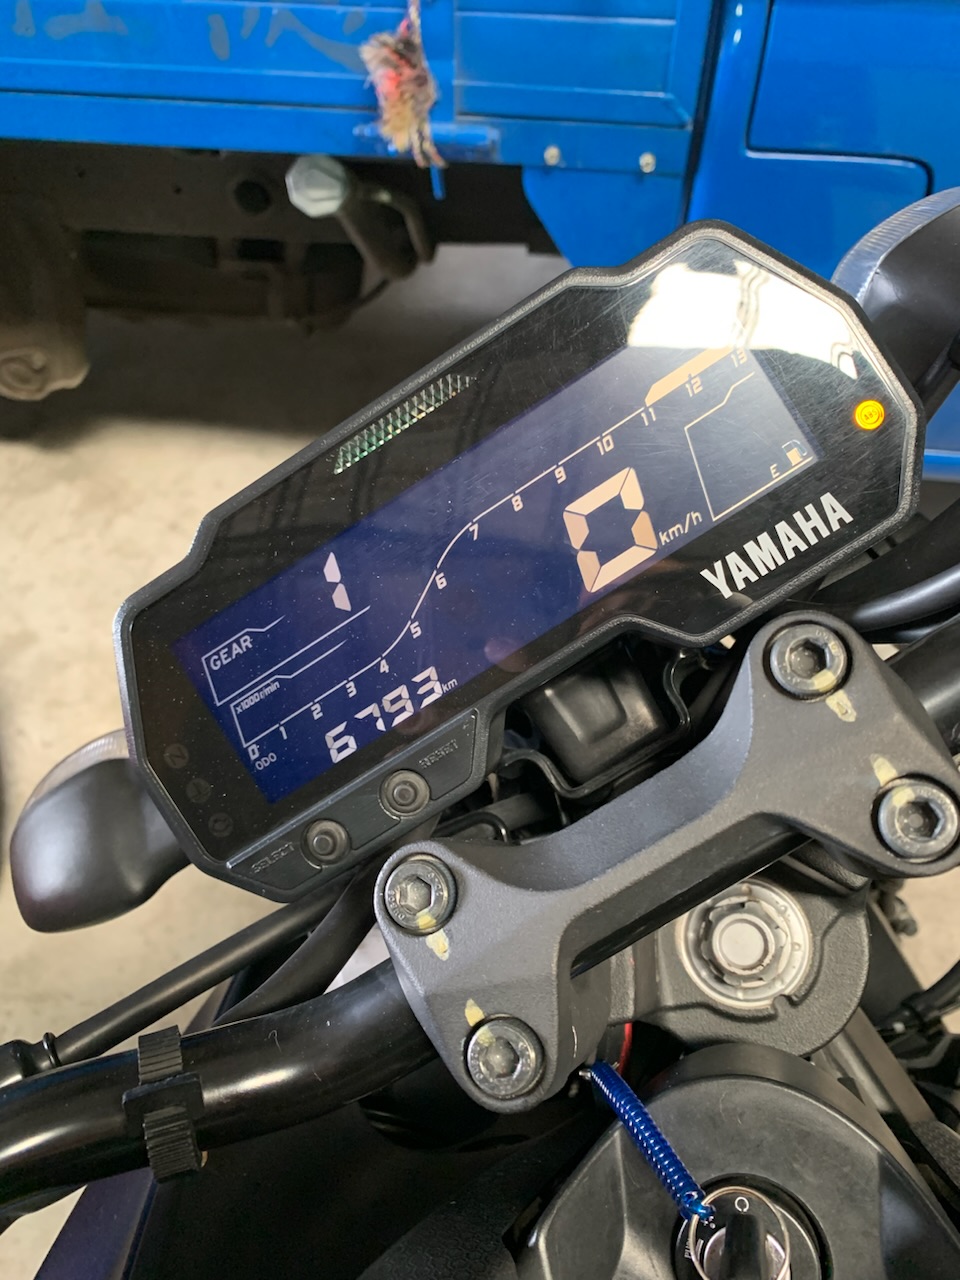 YAMAHA MT-15 - 中古/二手車出售中 2019 Yamaha  MT15，前車主少騎故出售 | 繪馬輕重型機車